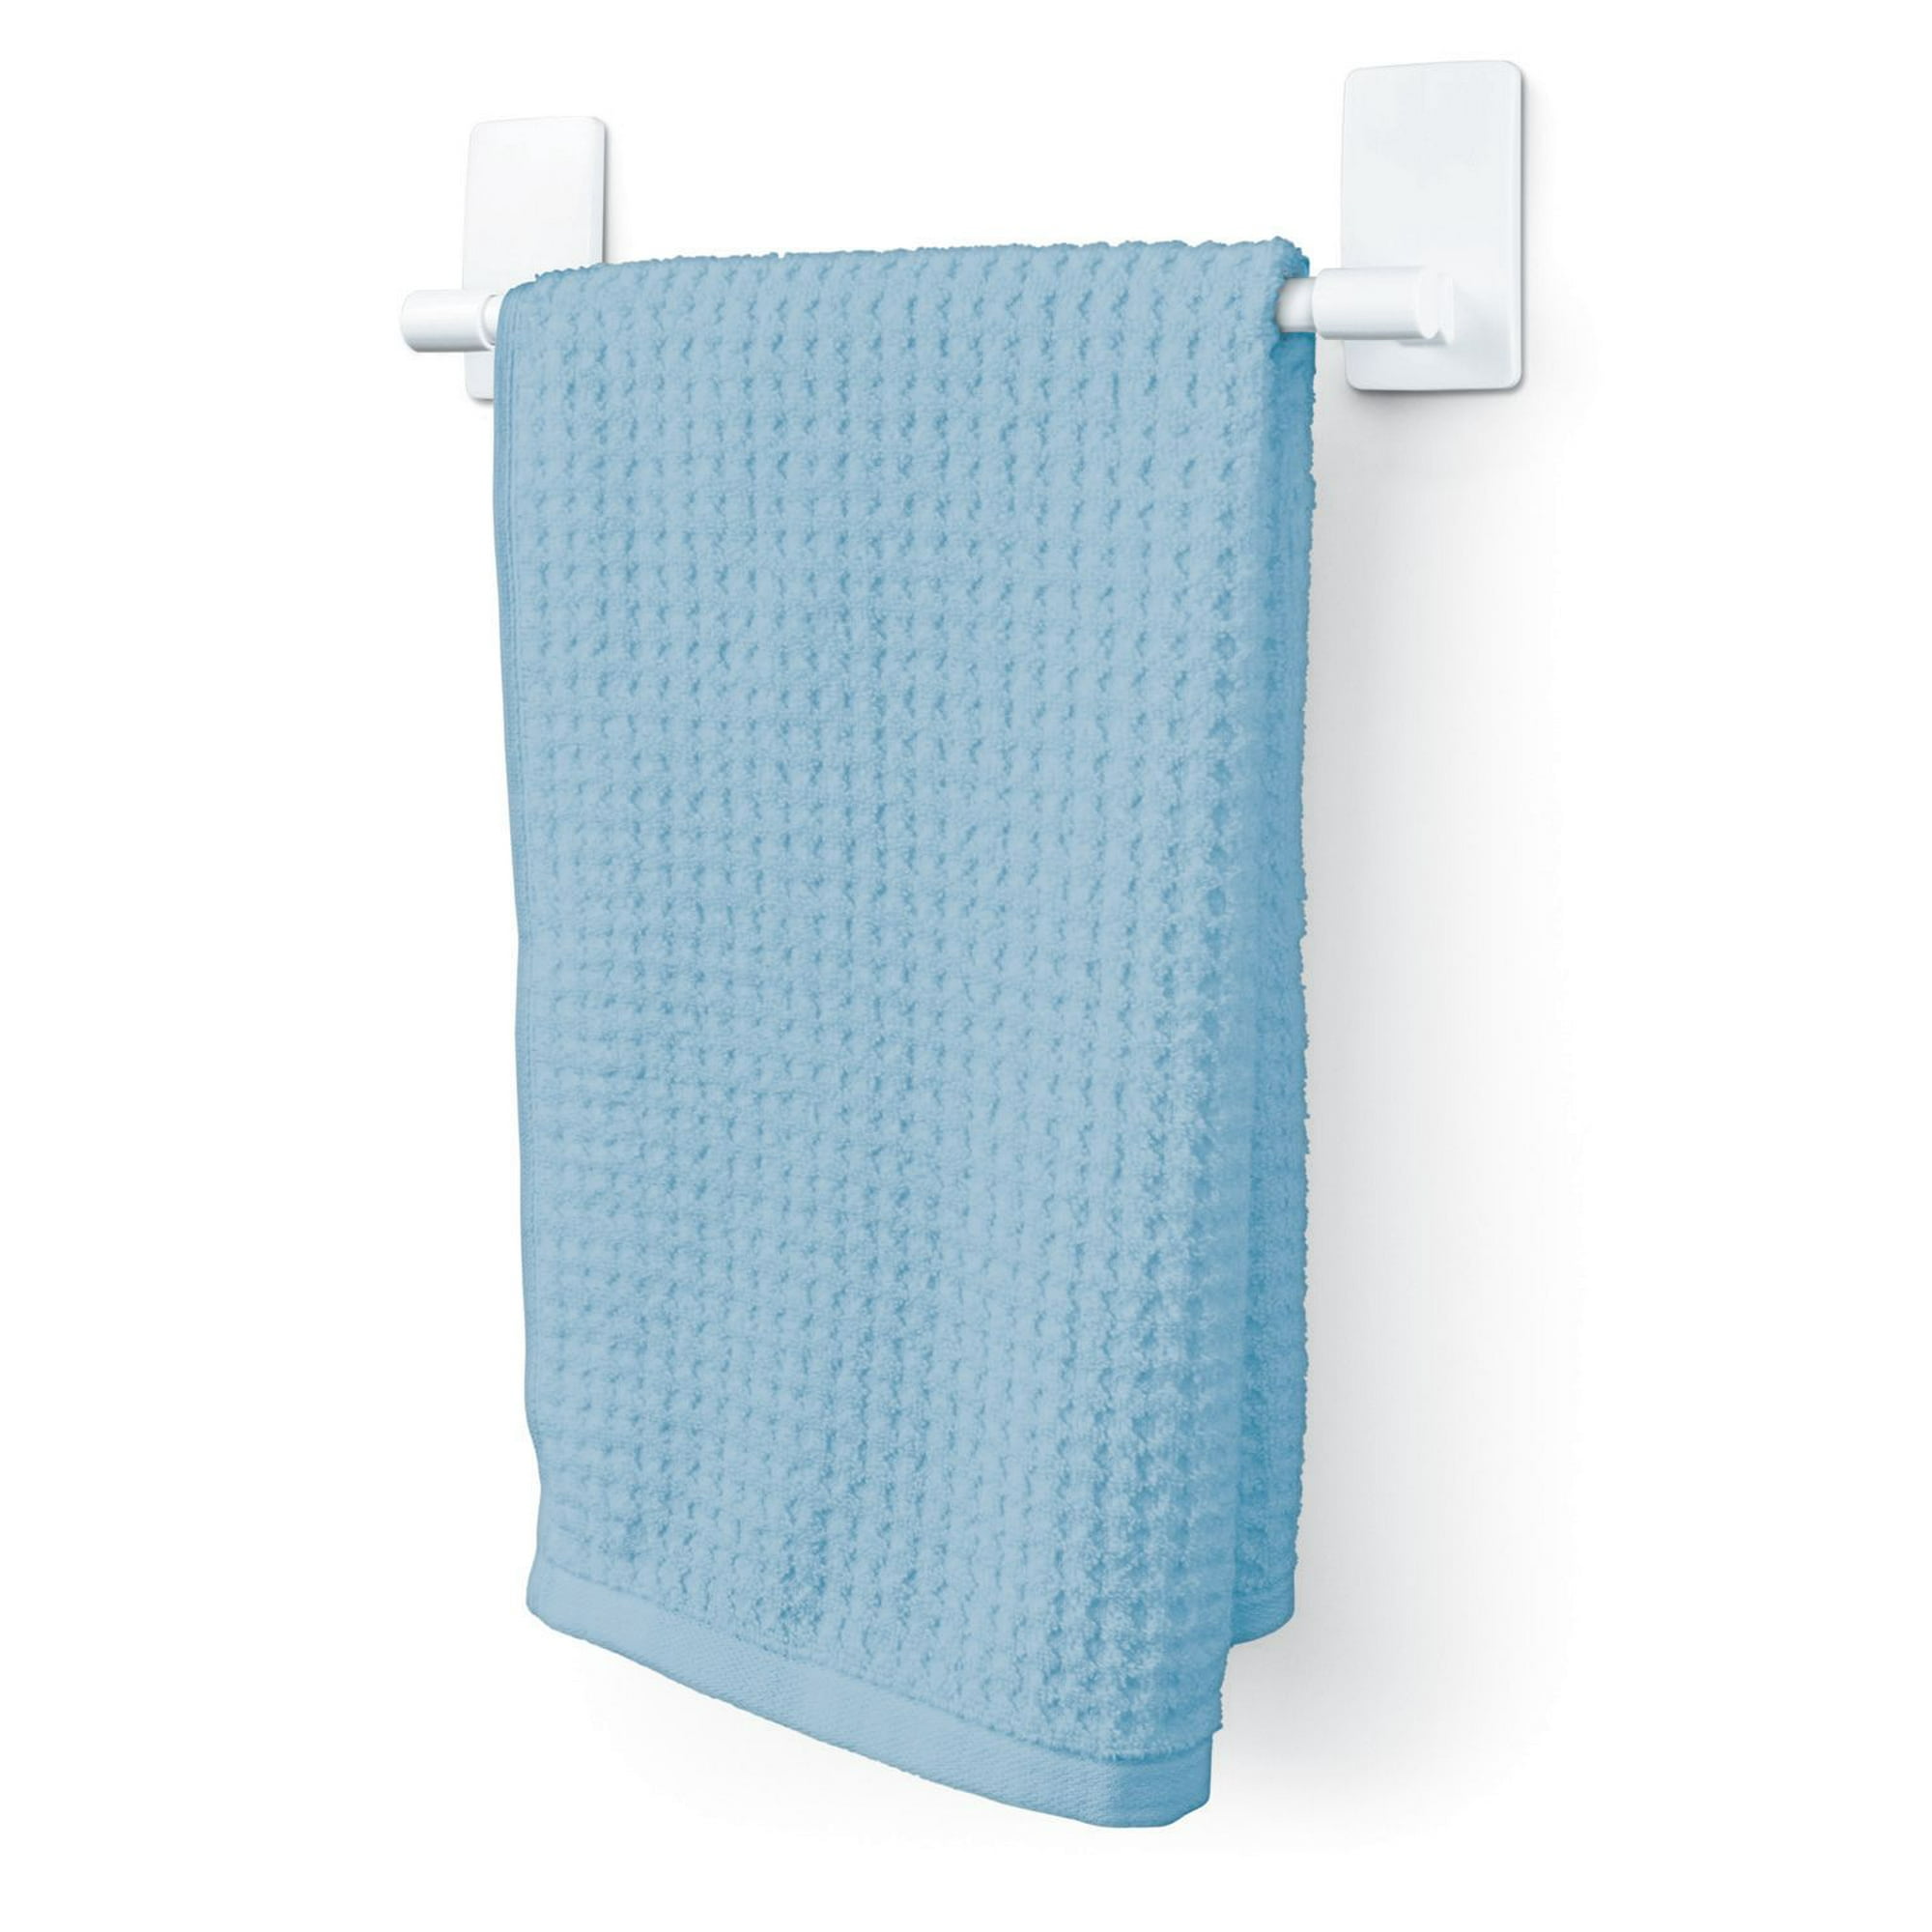 Command™ Bath Hand Towel Bar BATH42-EF, Medium, Plastic, 3 lb (1.3